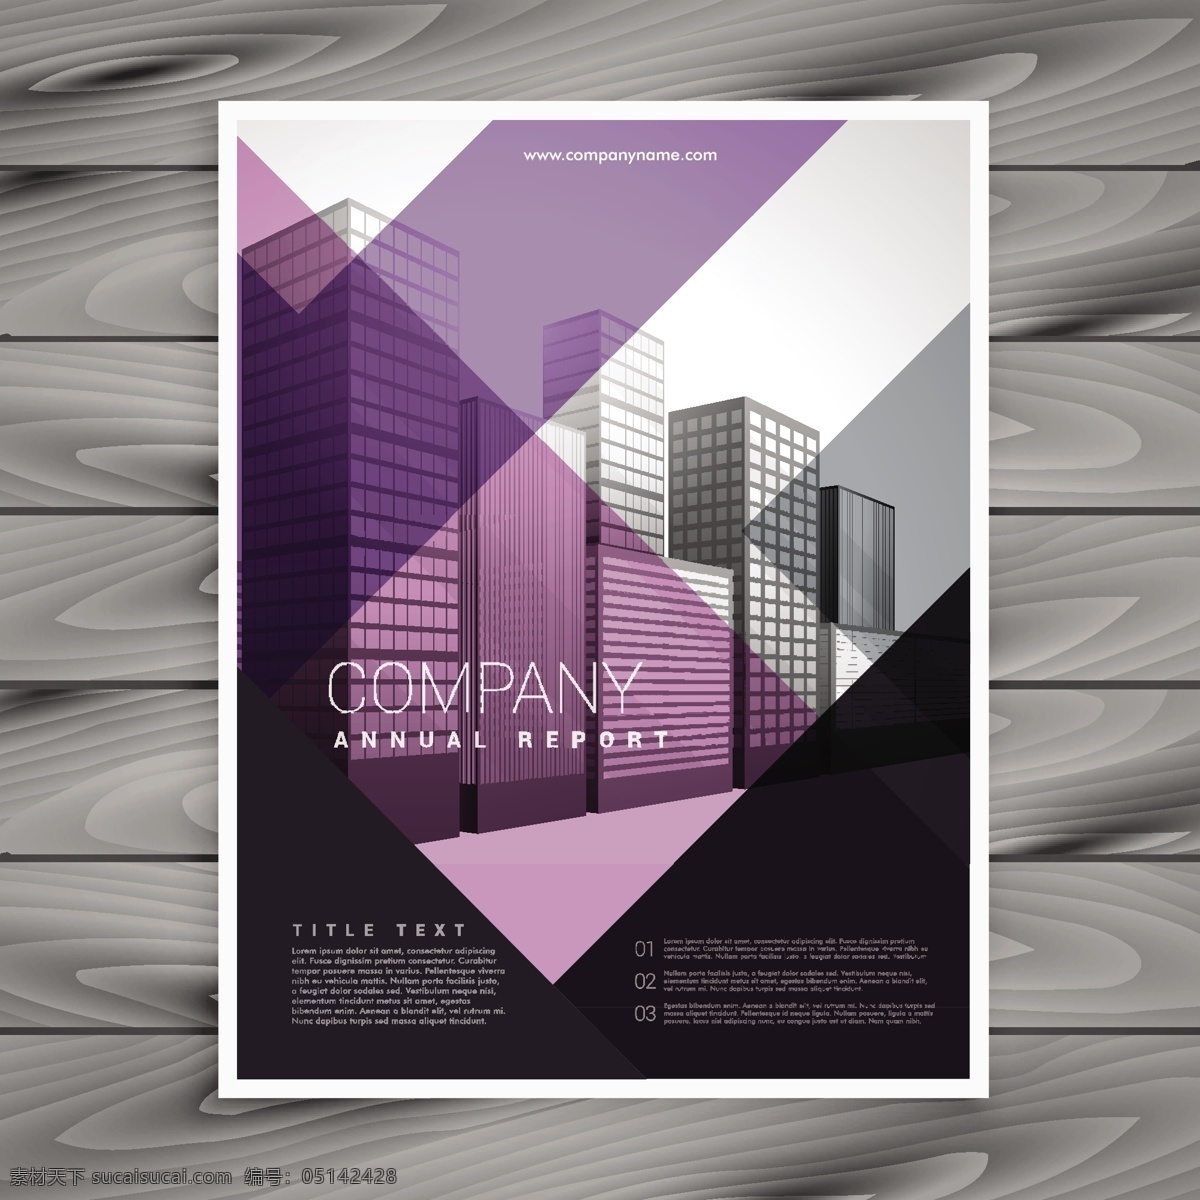 紫色 宣传册 模板 品牌 传单 海报 商业 抽象 卡片 封面 建筑 树叶 办公室 杂志 营销 布局 演示 目录 文具 公司 创意